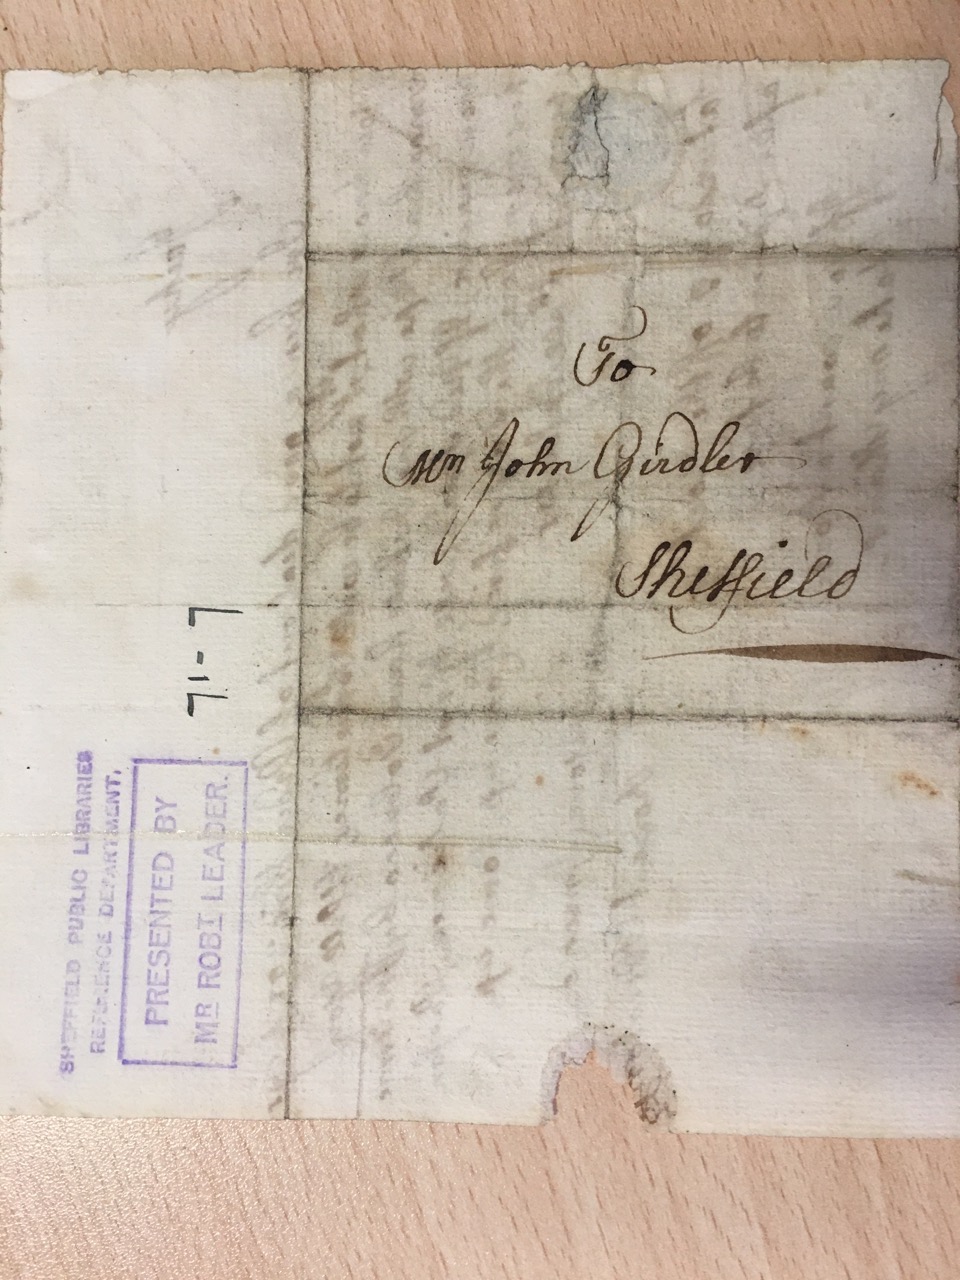 Image #2 of letter: Robert Newton to John Girdler, undated